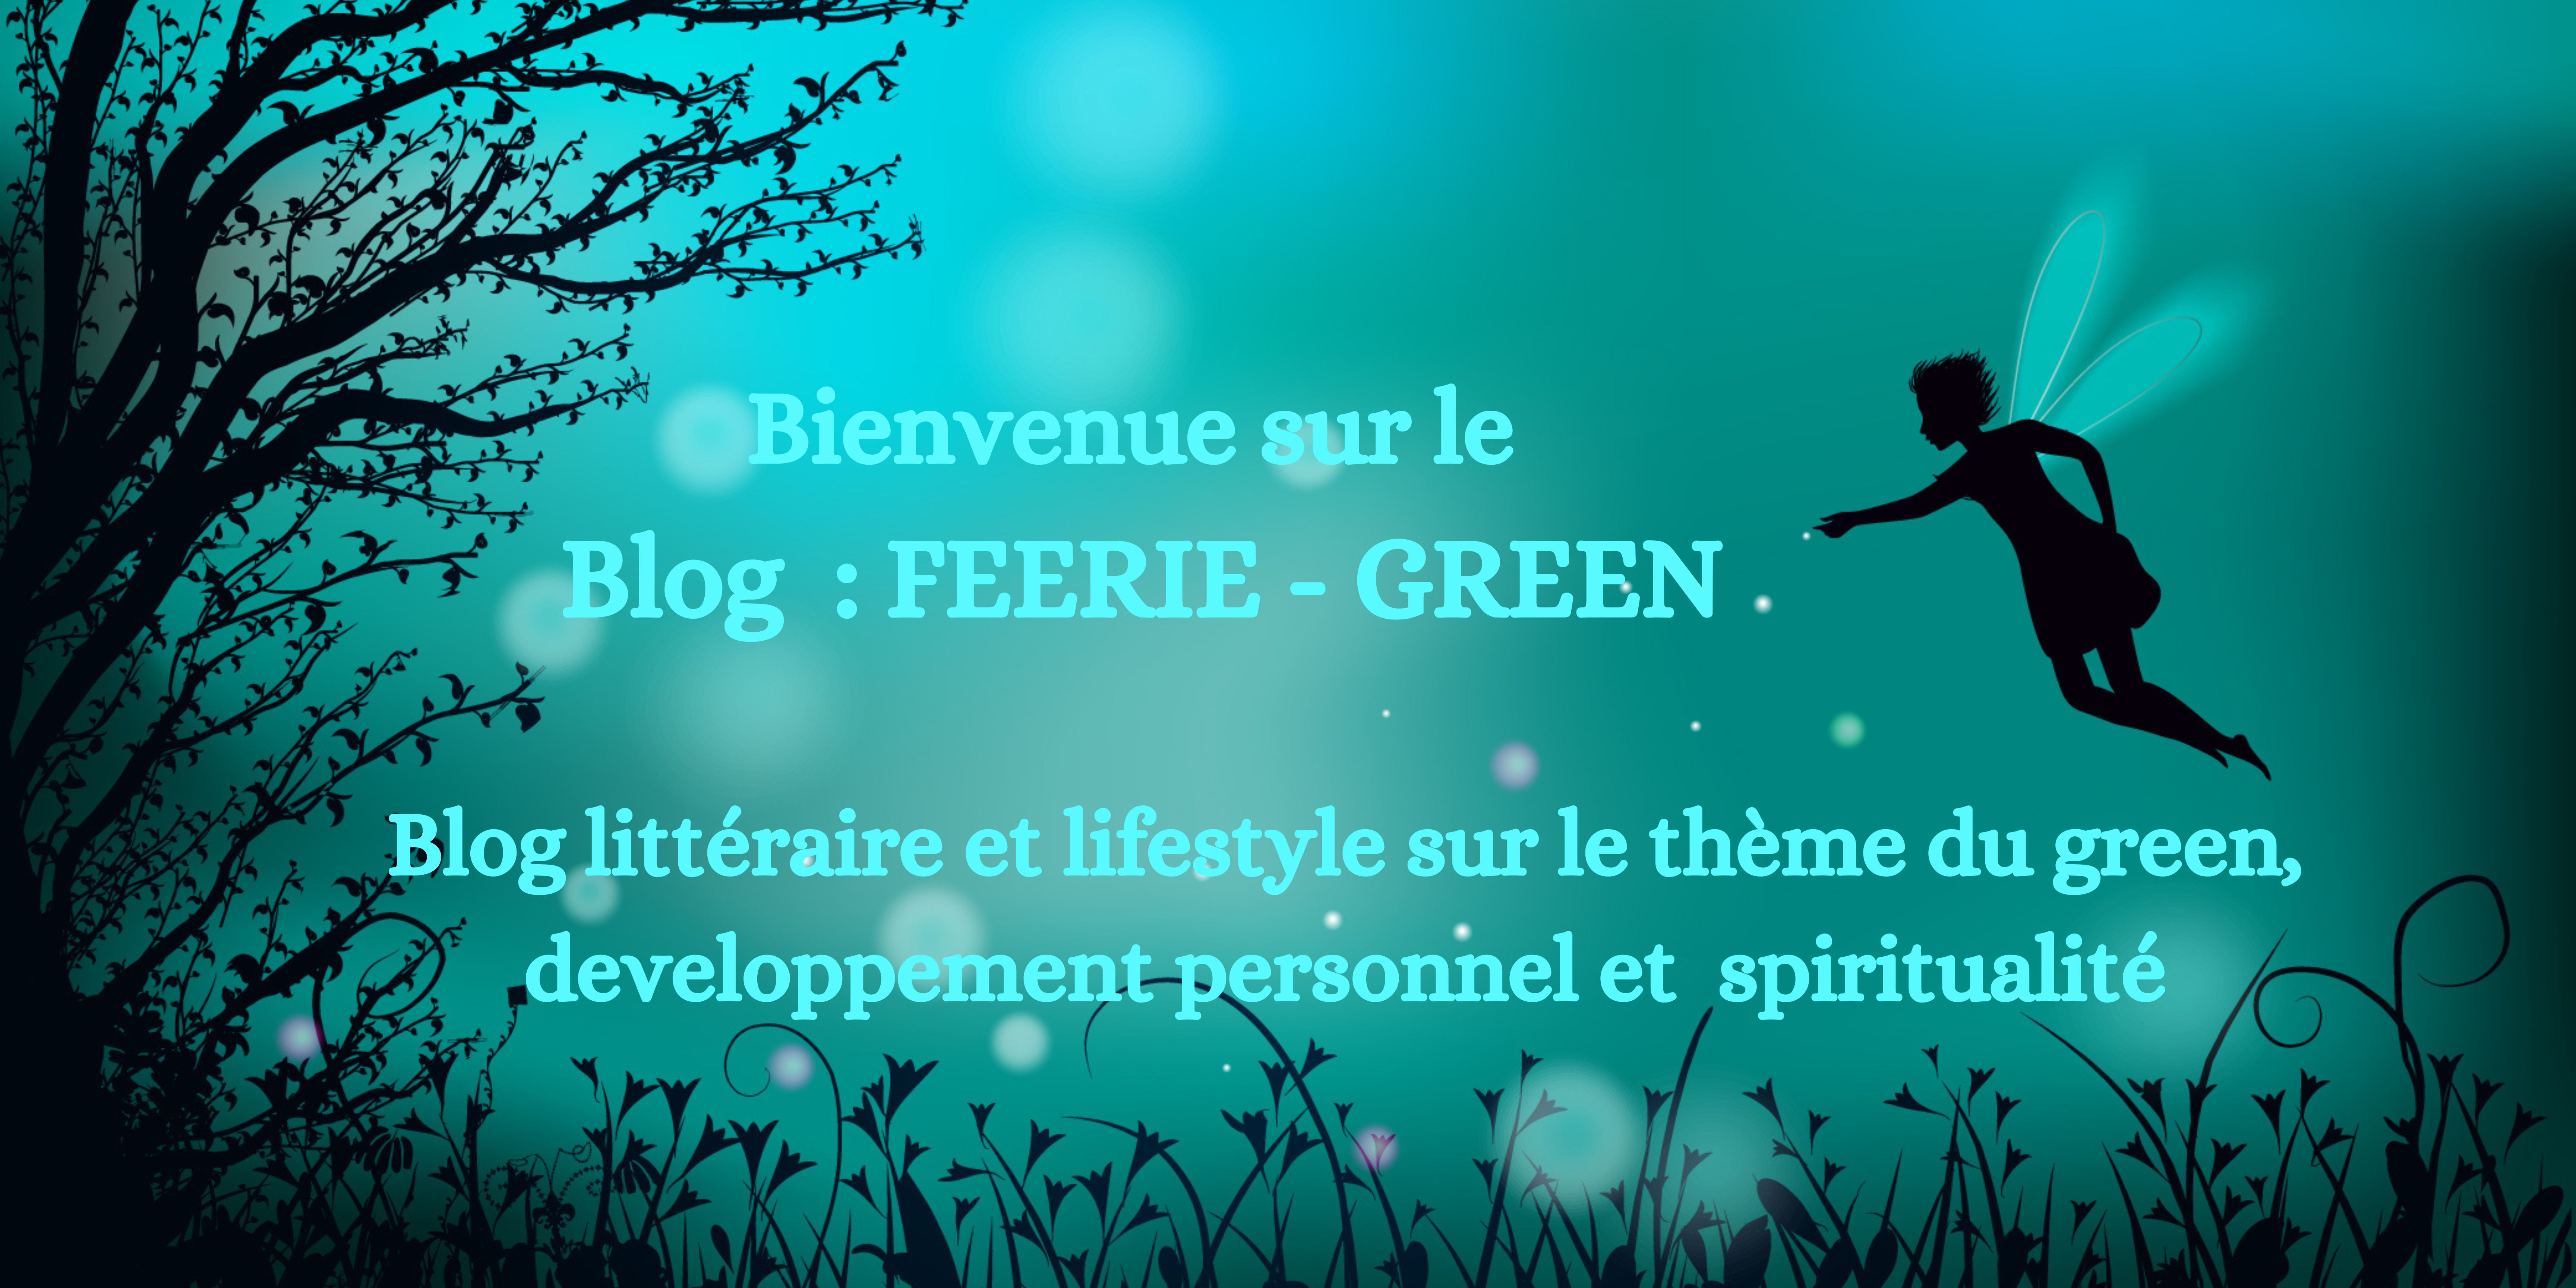 Blog féerie green